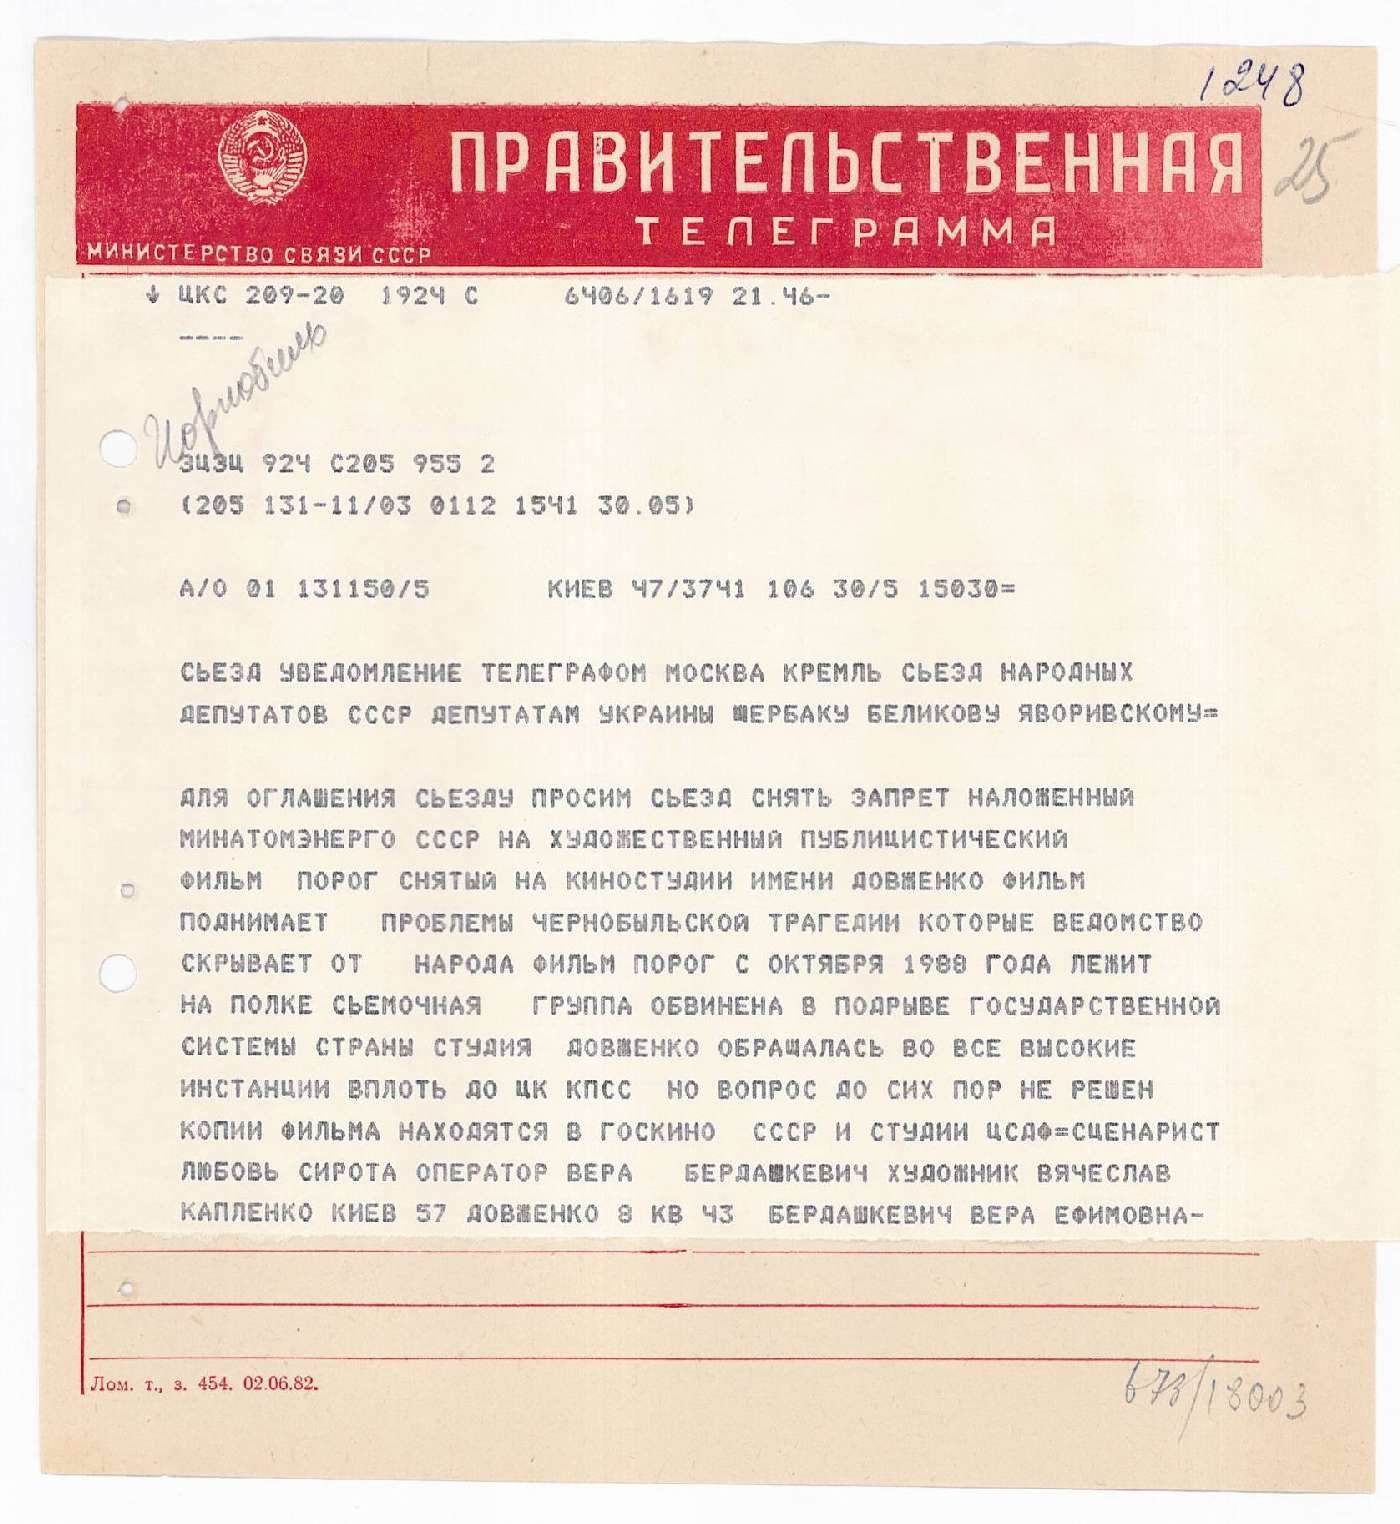 Звернення та телеграми до народного депутата Ю. М. Щербака з питань аварії на ЧАЕС та її наслідків за 1989 -1990 роки. 1989-1990 рр.